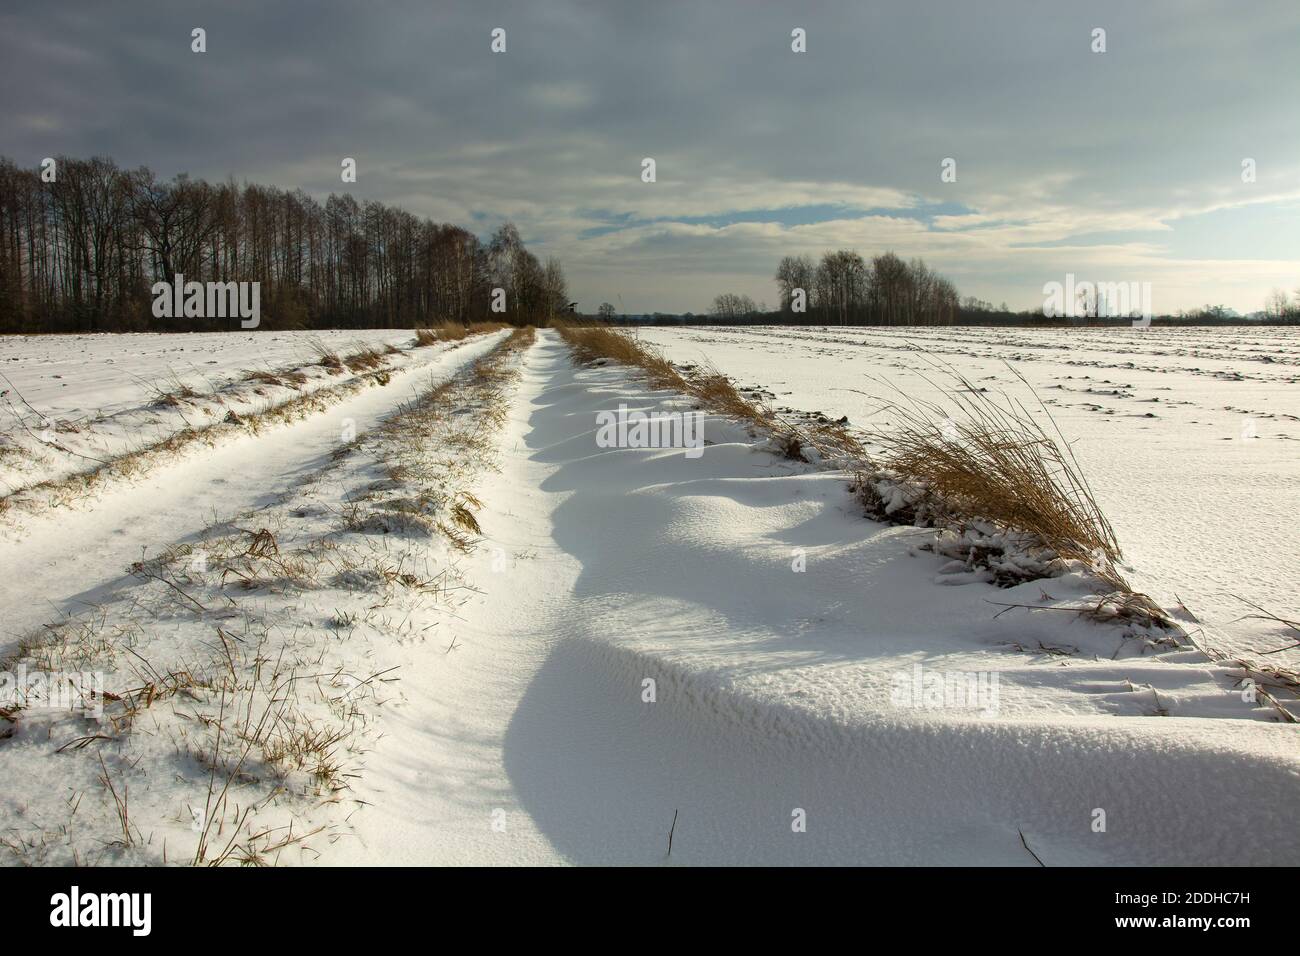 Une route de terre et des dérives de neige, une forêt à l'horizon et un ciel nuageux, hiver ensoleillé jour Banque D'Images